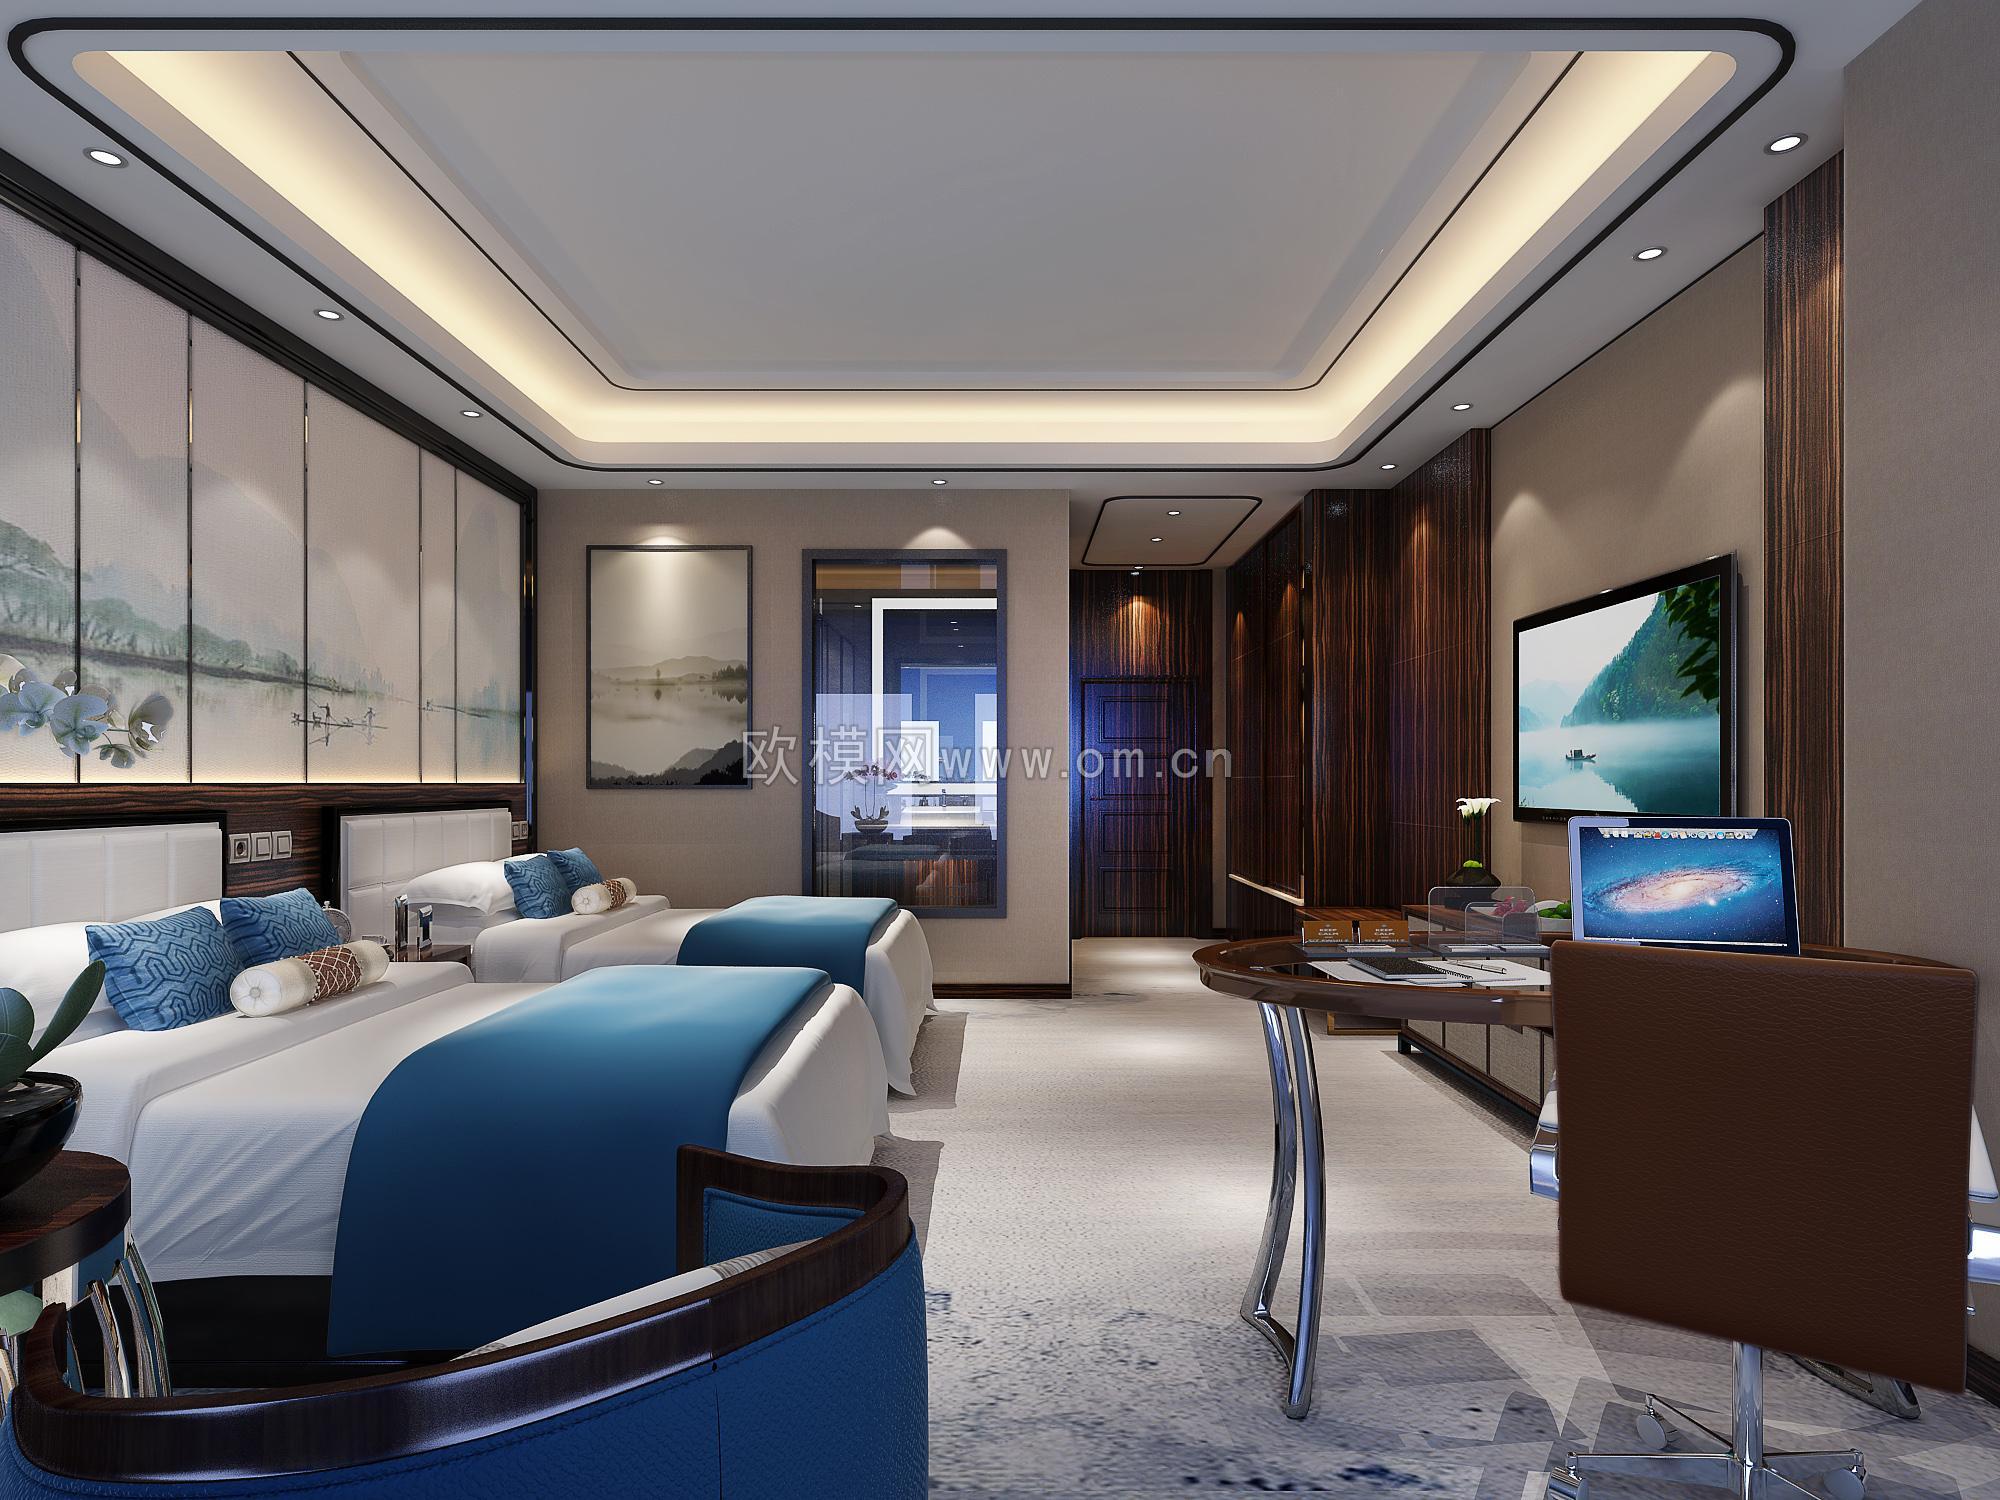 新中式酒店客房 - 效果图交流区-建E室内设计网